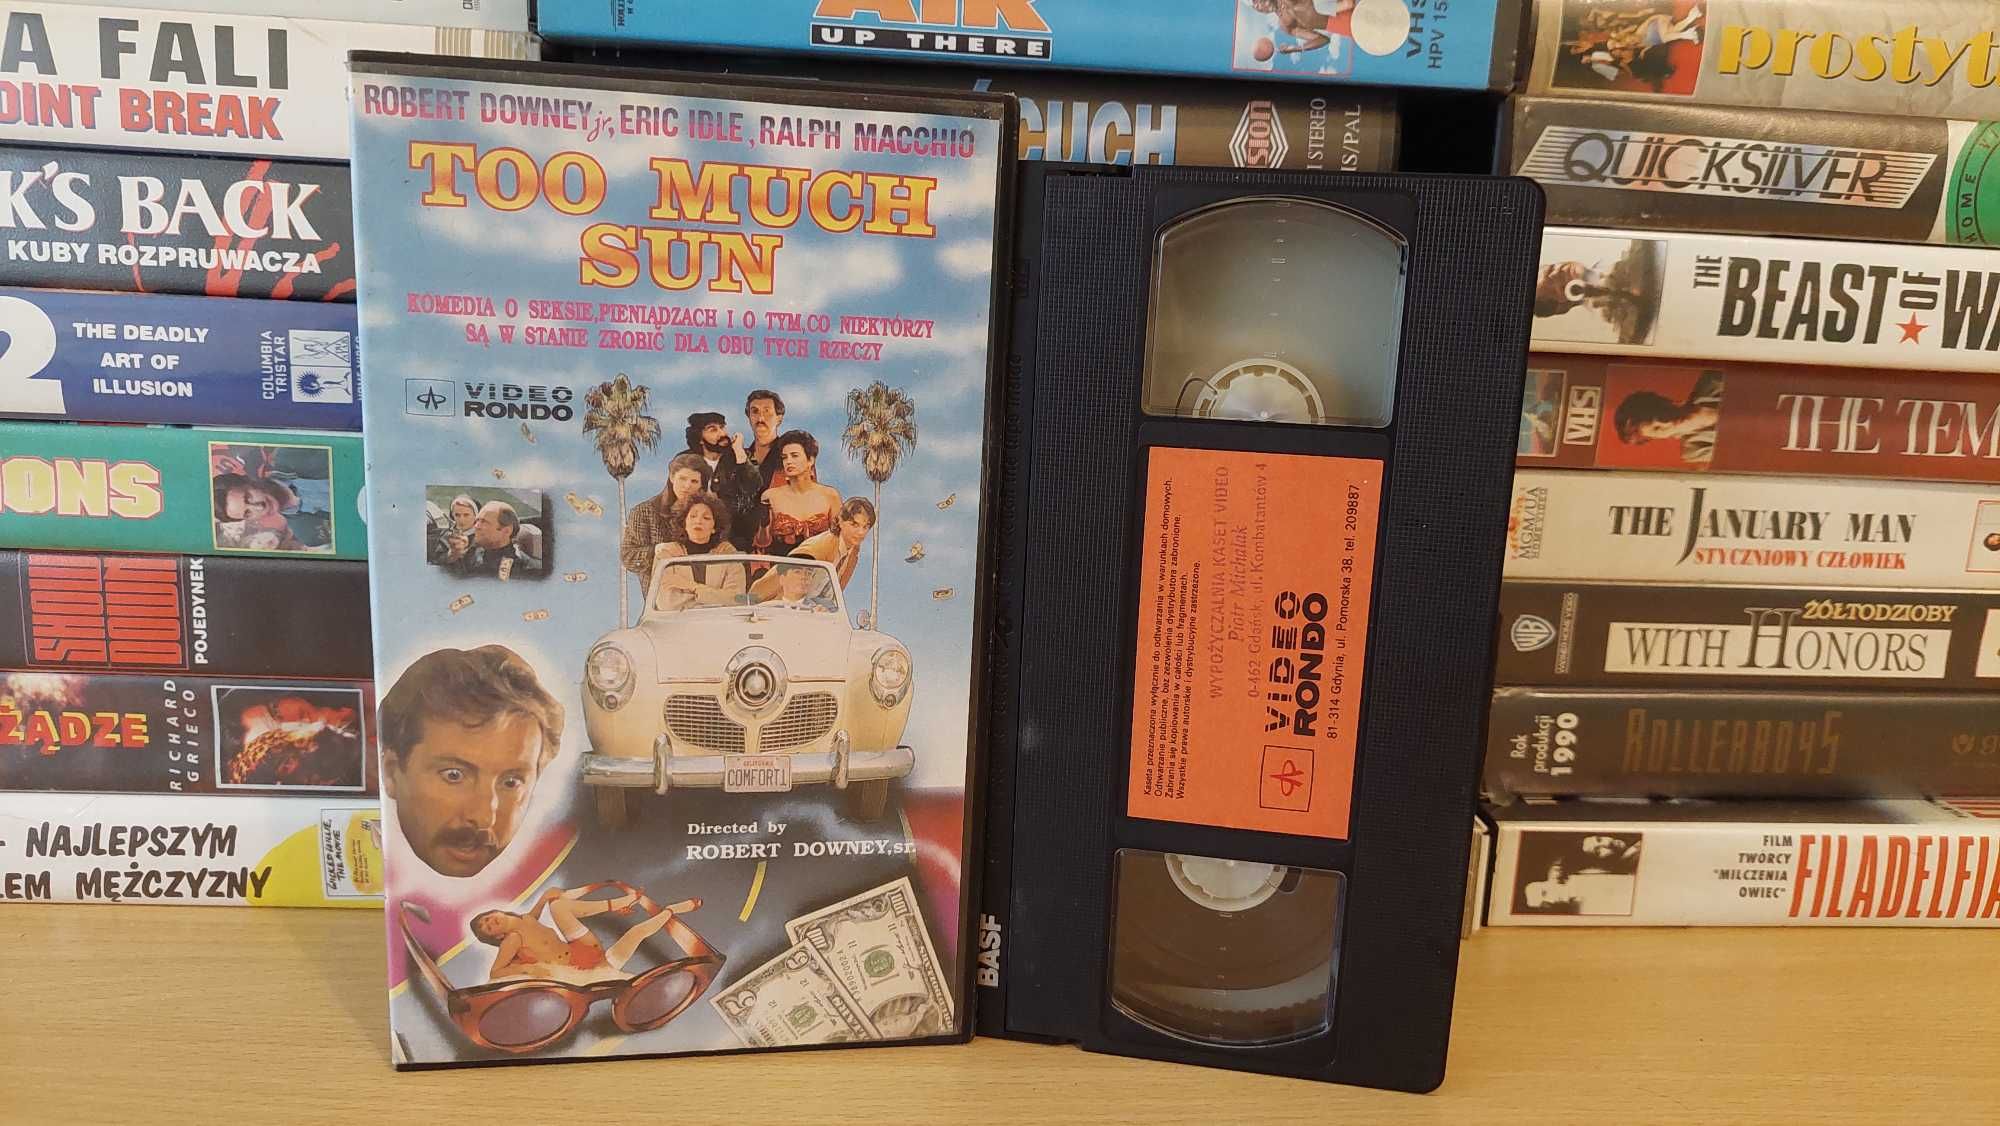 Za Dużo Słońca - (Too Much Sun) - VHS